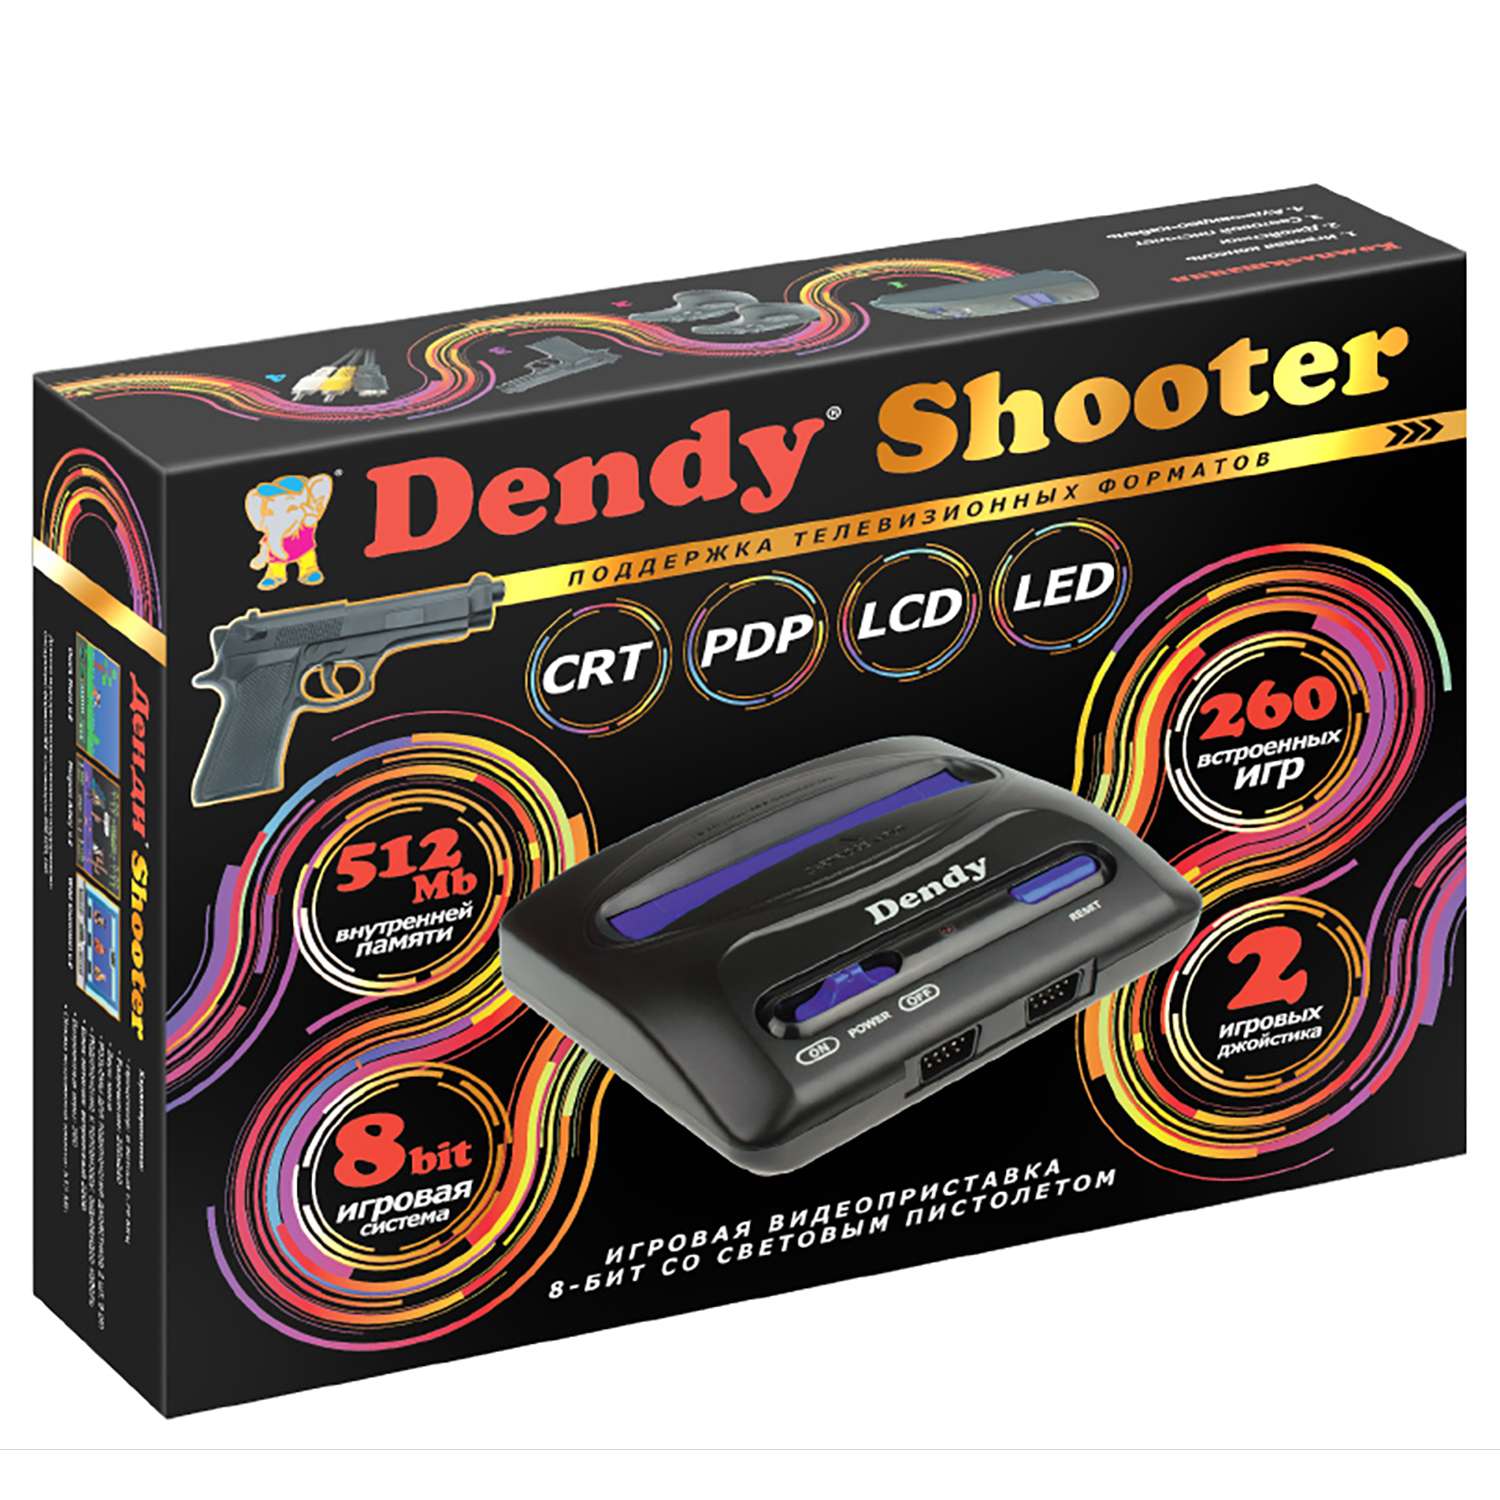 Игровая приставка Dendy Dendy Shooter 260 встроеннах игр + световой пистолет - фото 1